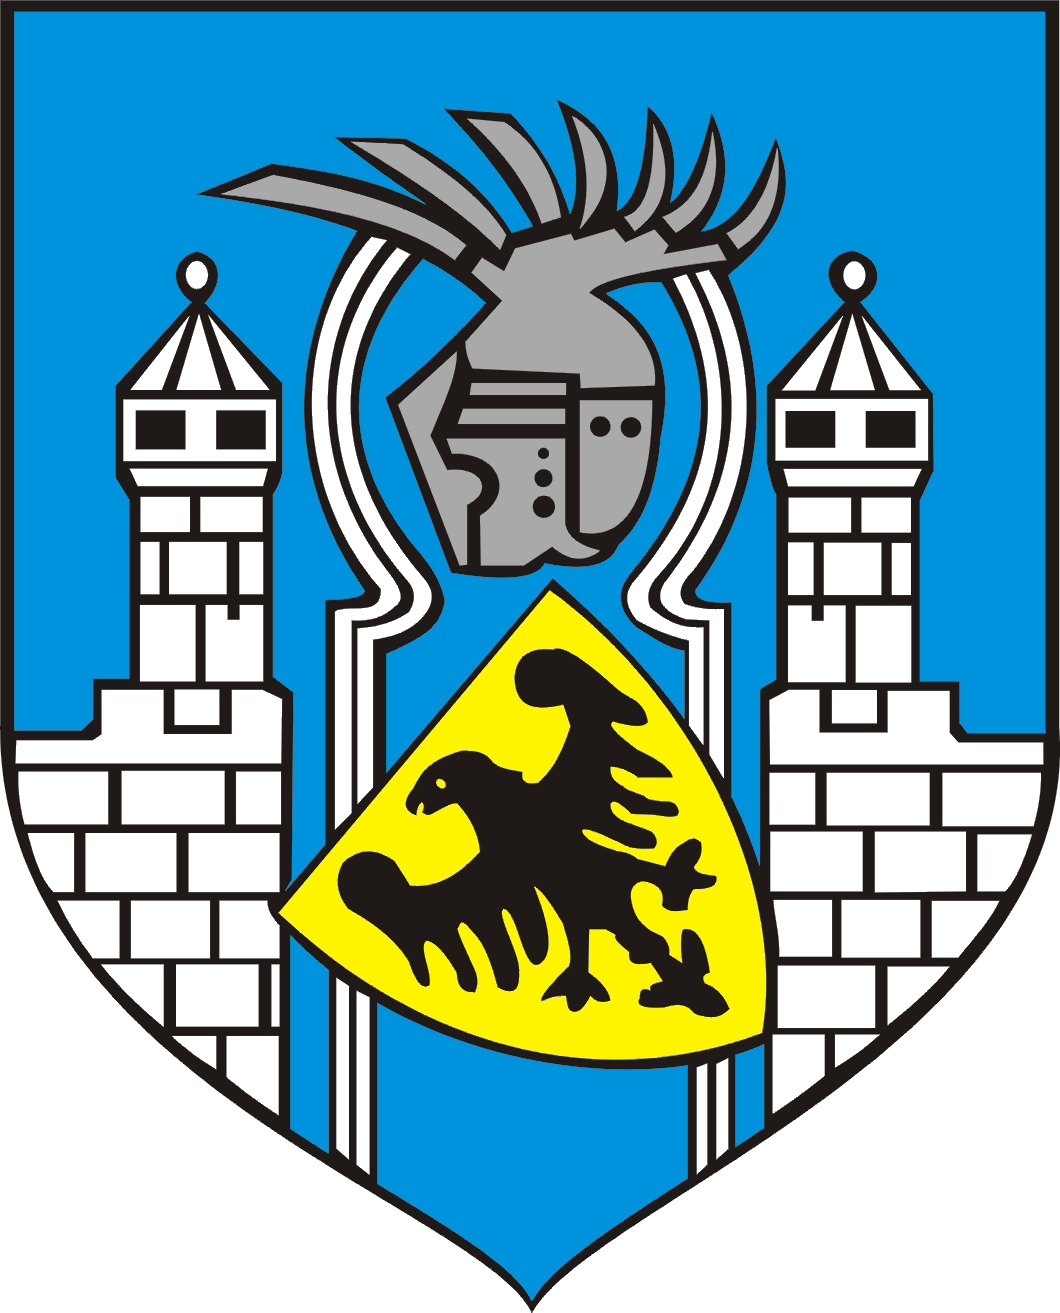 Urząd Miasta Zgorzelec